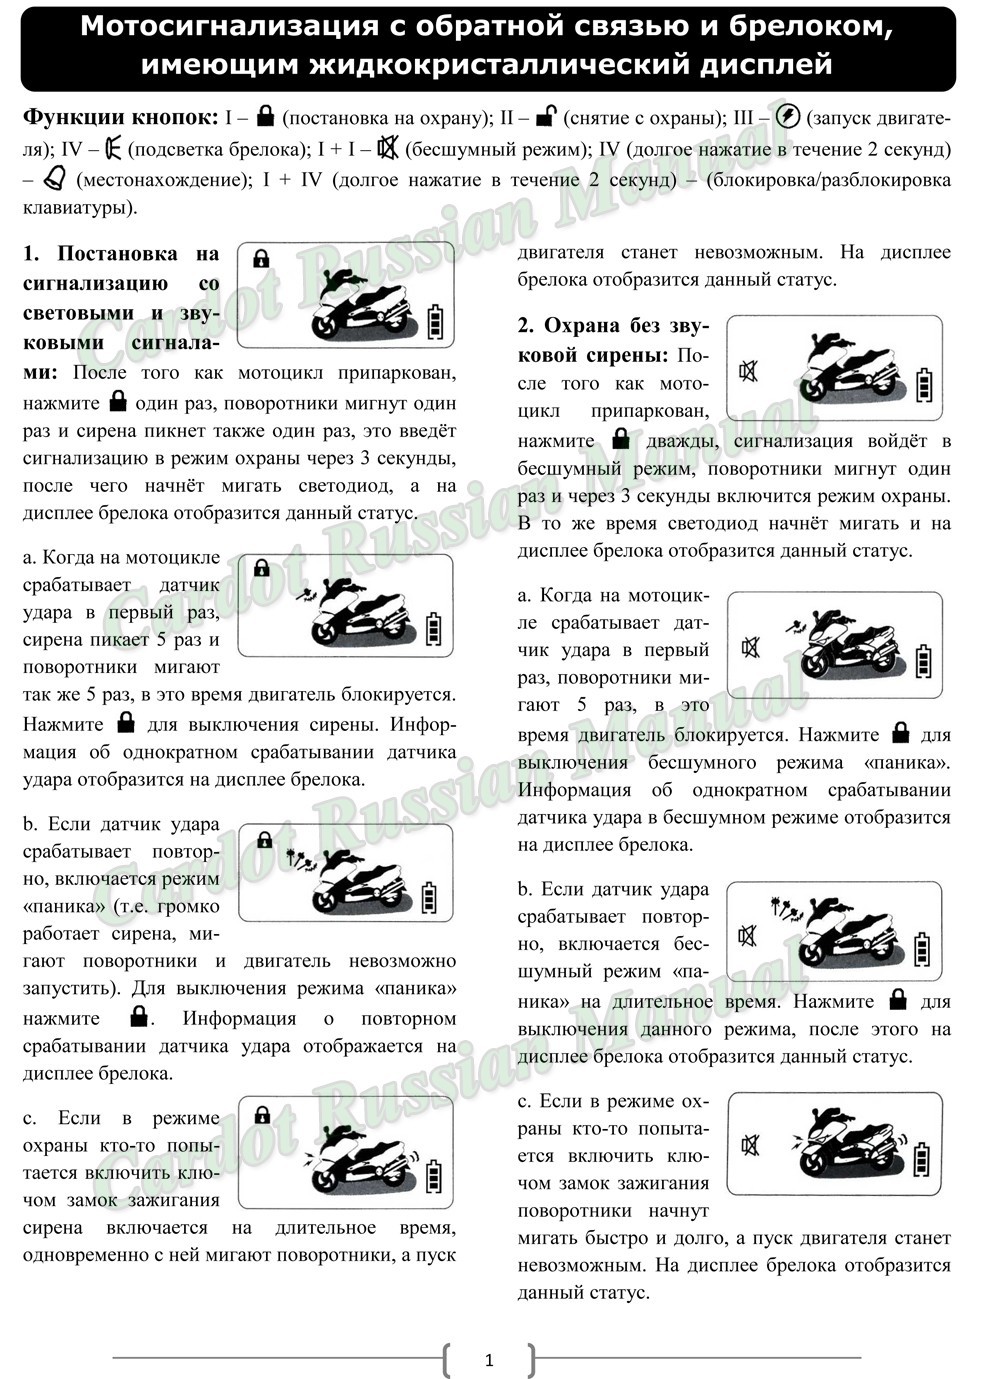 Manual_CARDOT Rus(CD-MT171)-1